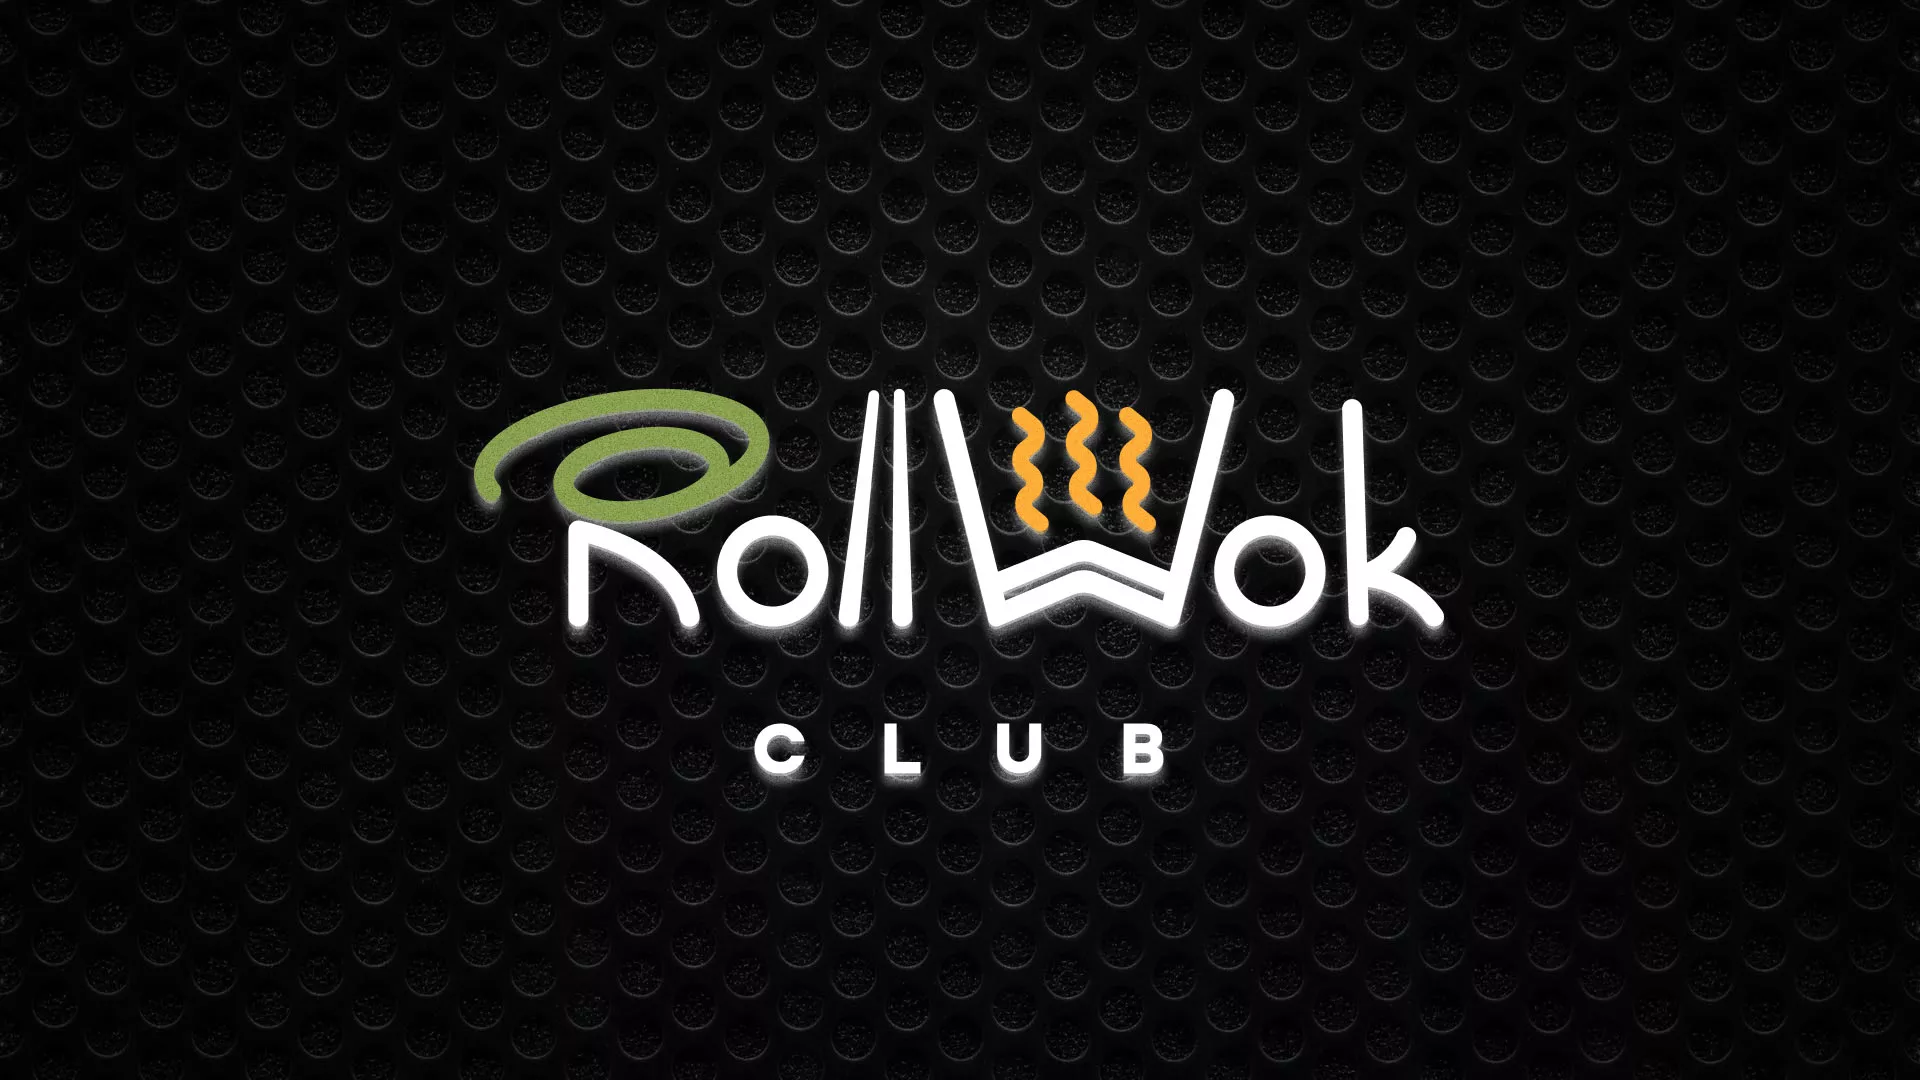 Брендирование торговых точек суши-бара «Roll Wok Club» в Льгове